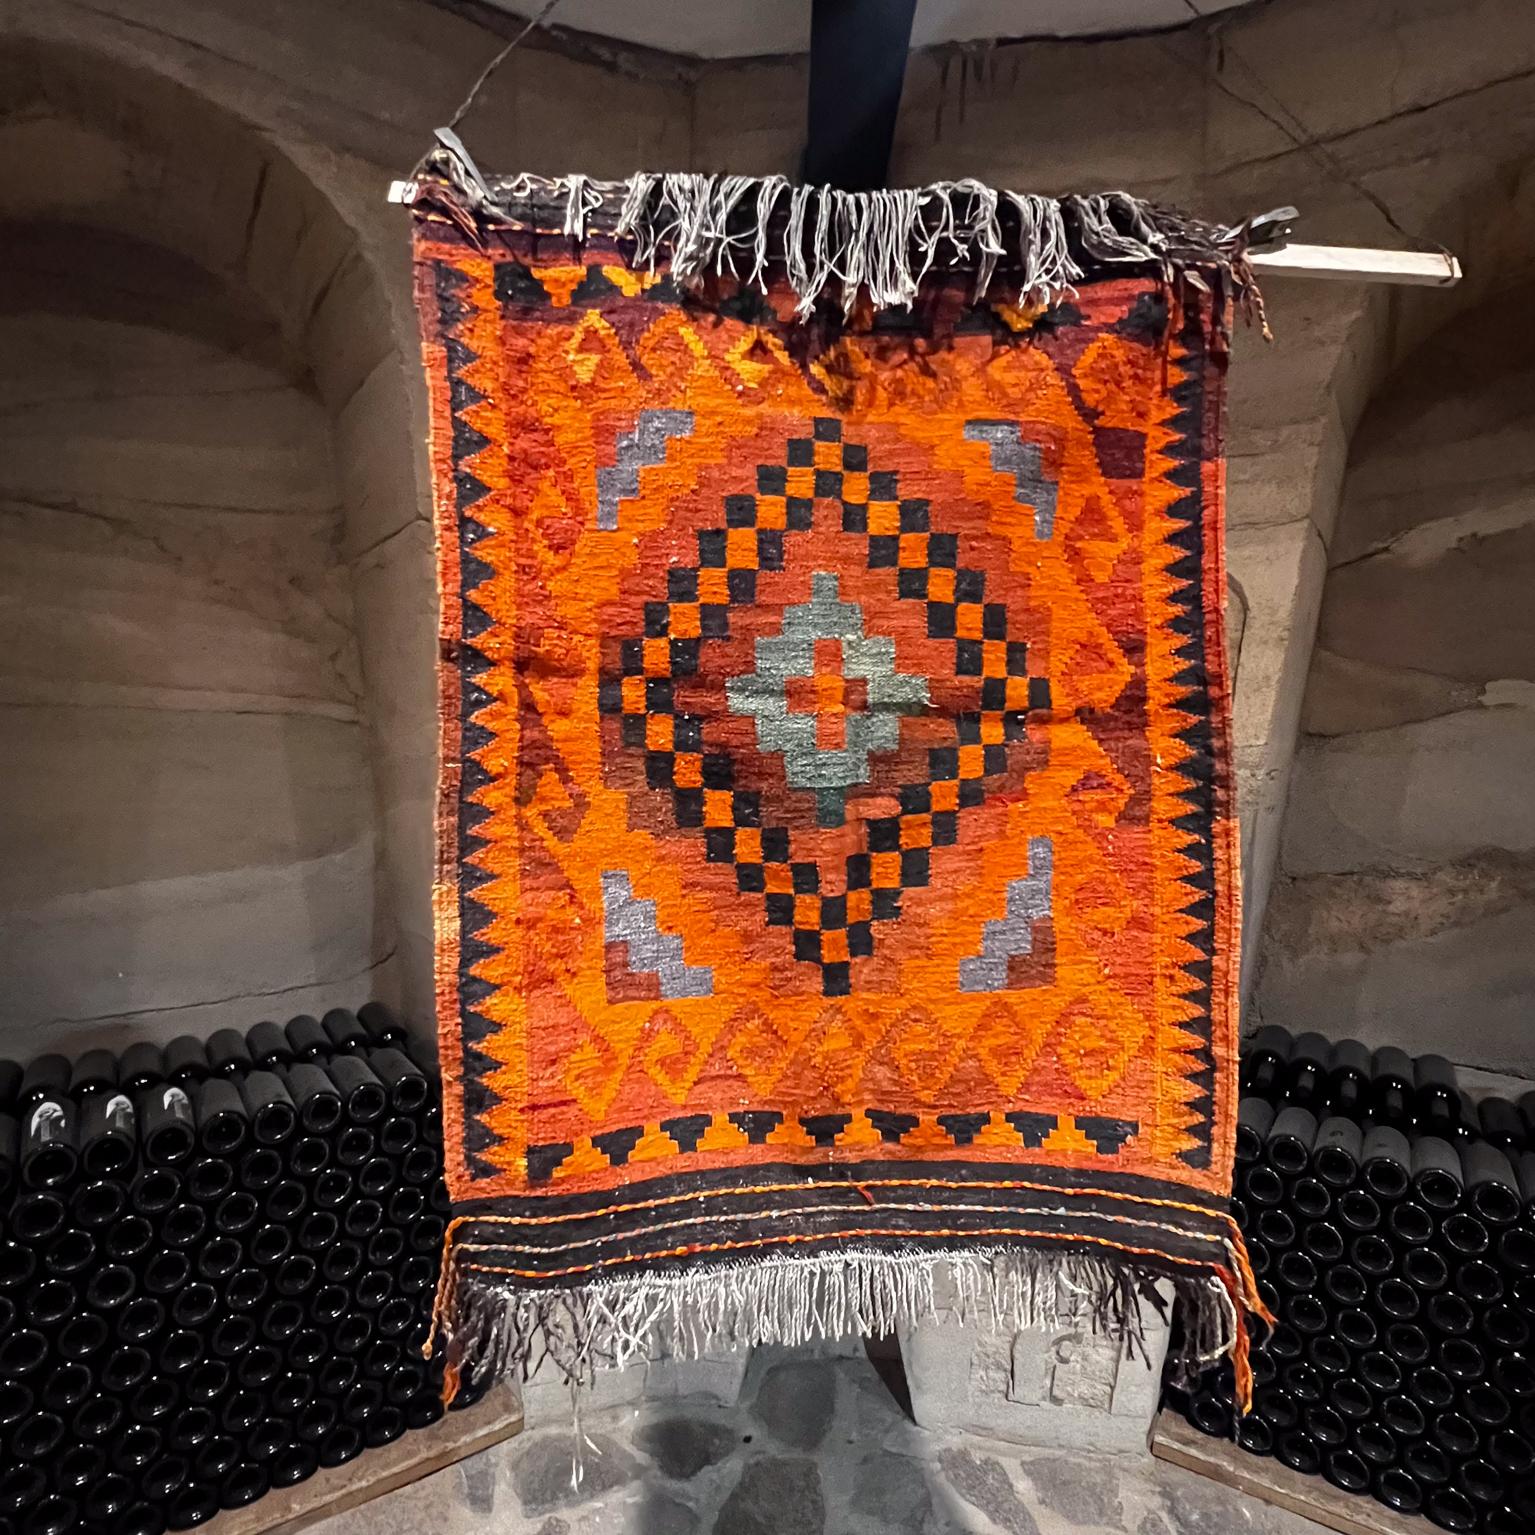 Navajo-Textil-Wandteppich in lebhaftem Orange
36 x 46 
Gebrauchter Original-Vintage-Zustand unrestauriert.
Siehe alle bereitgestellten Bilder.

